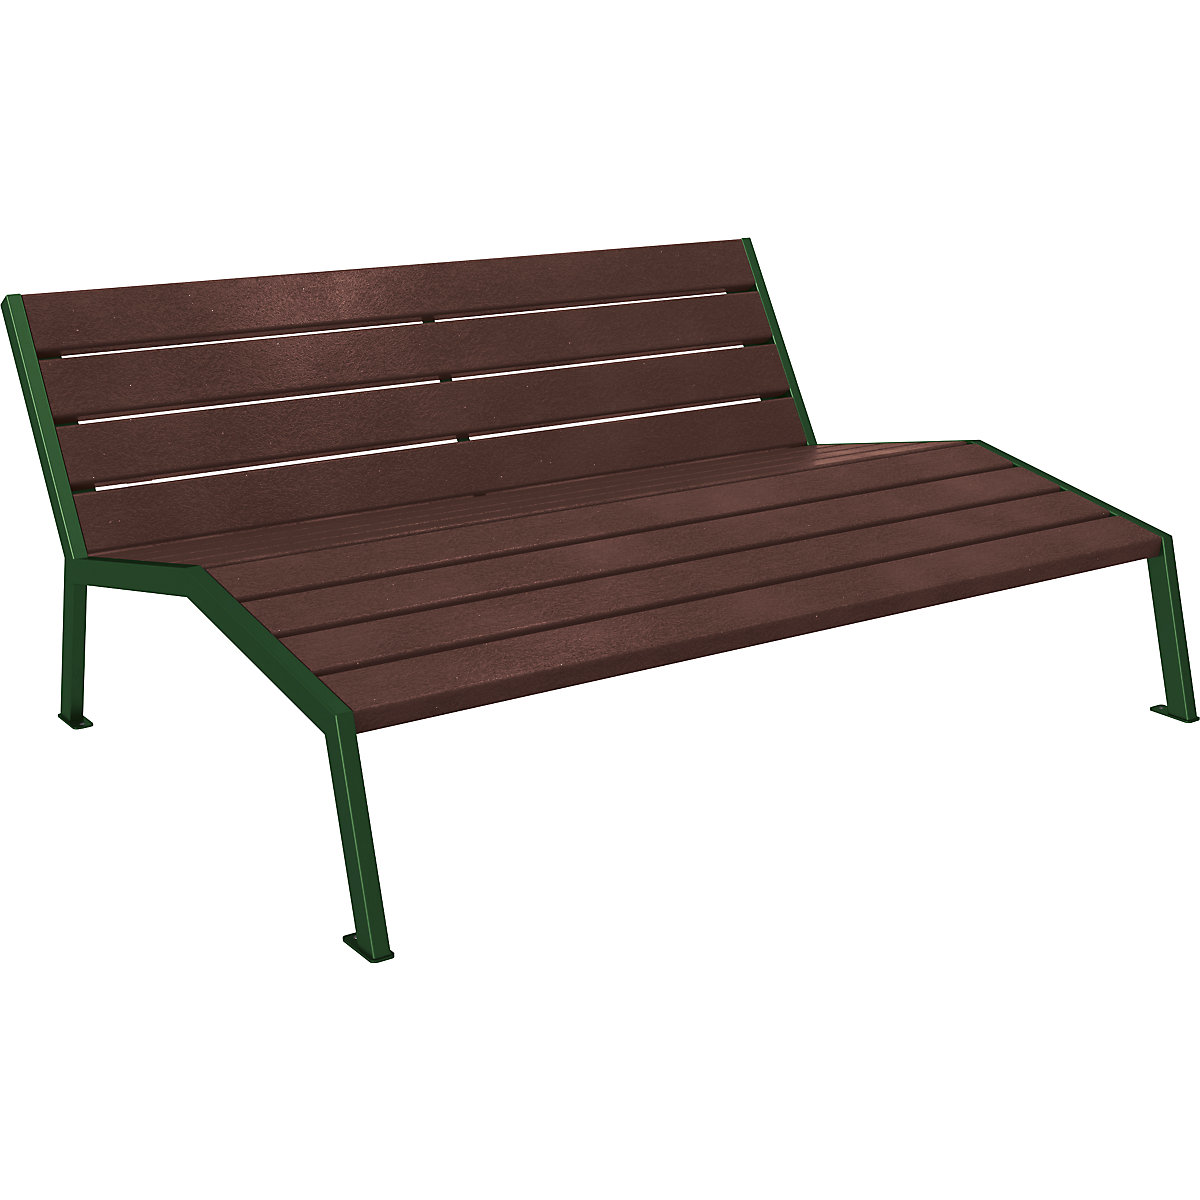 PROCITY Liegestuhl SILAOS® aus Recycling-Kunststoff, verzinkt und beschichtet, moosgrün